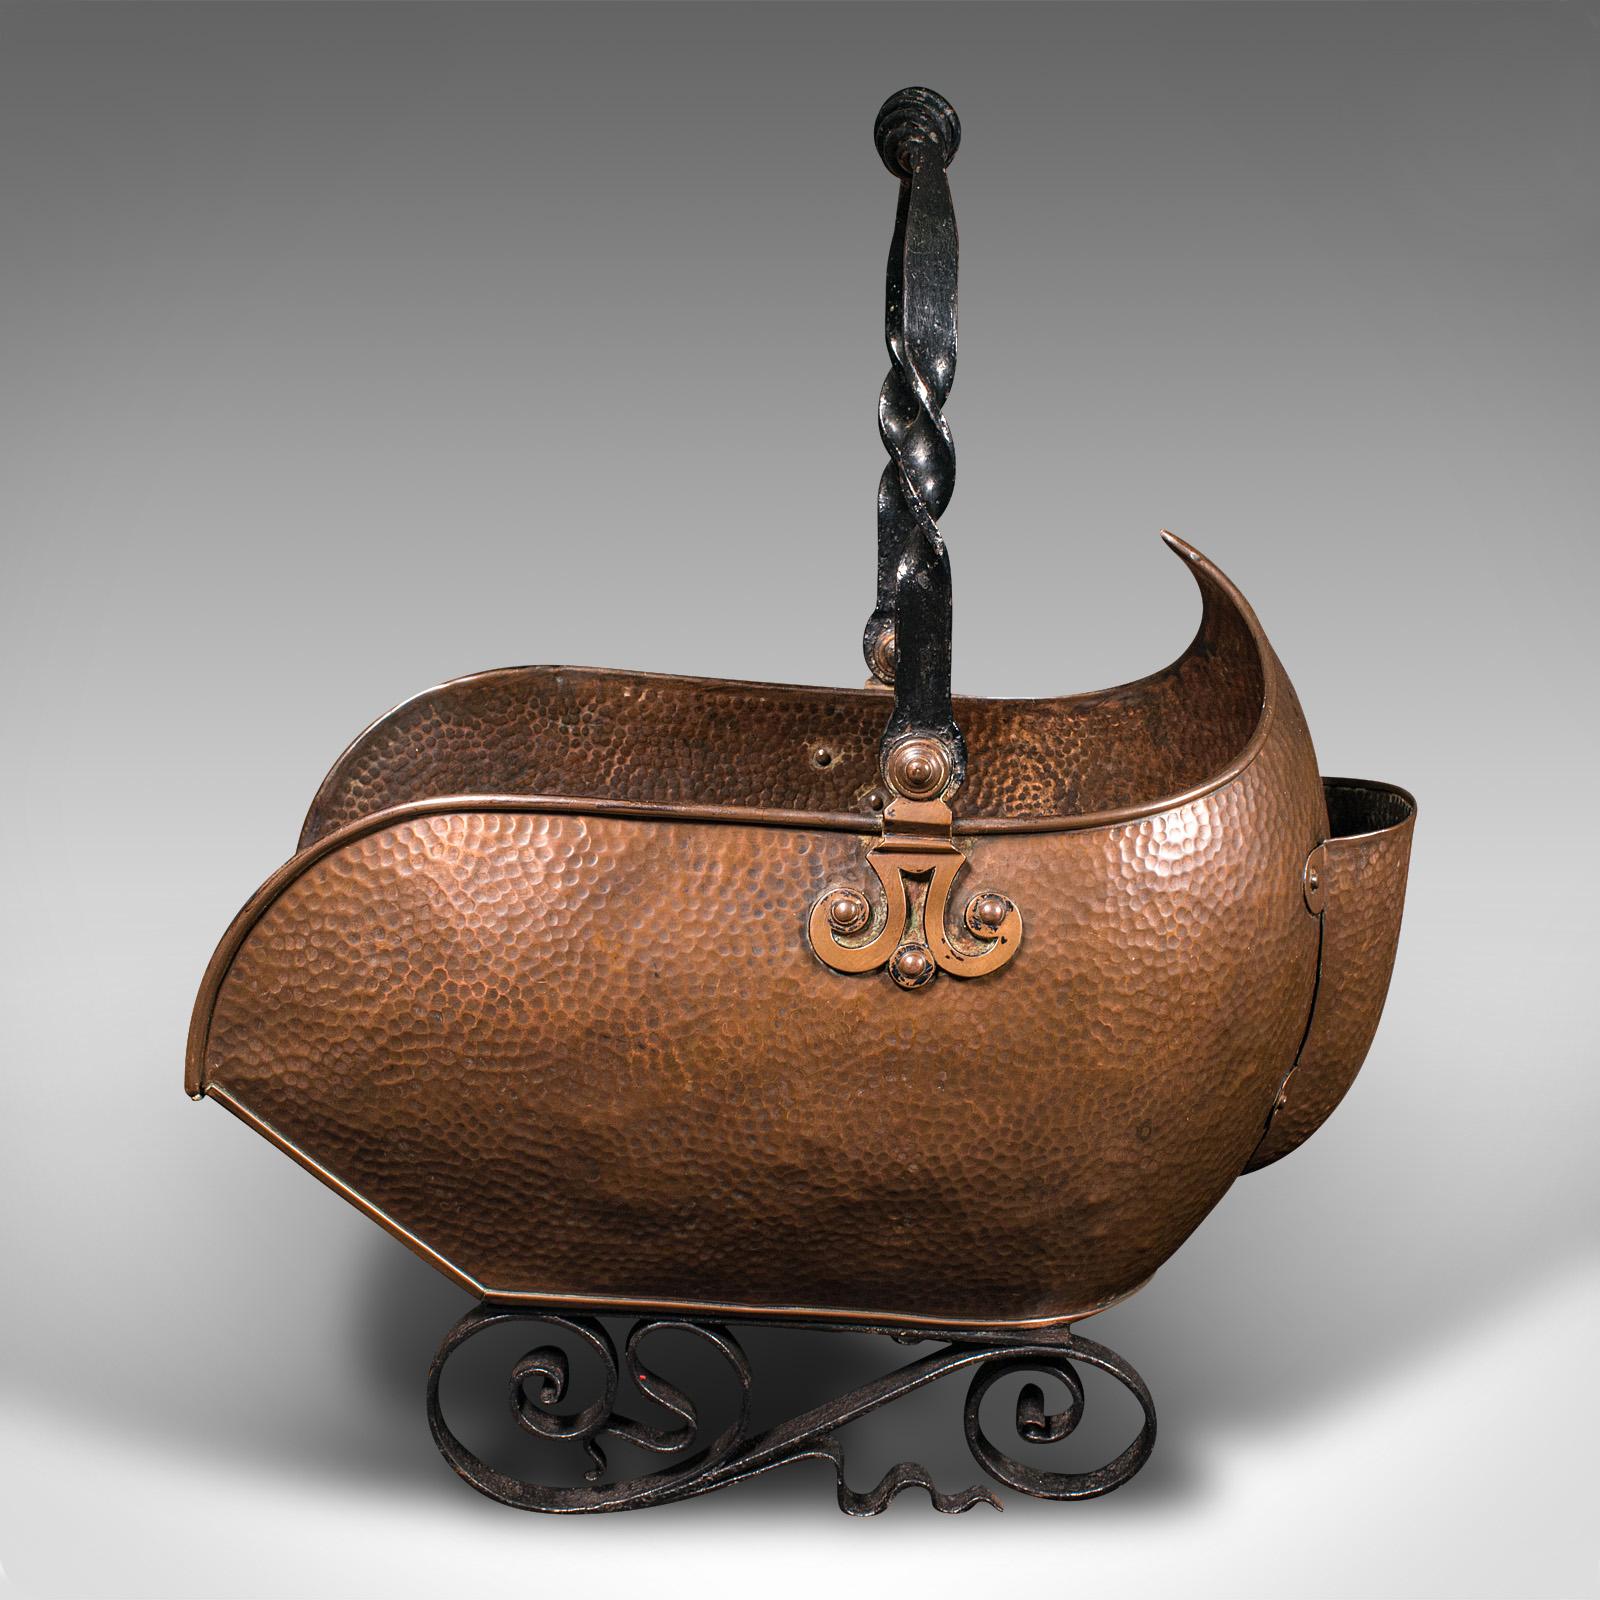 British Antique Art Nouveau Coal Scuttle, English Copper, Fireside Log Bucket, Victorian For Sale